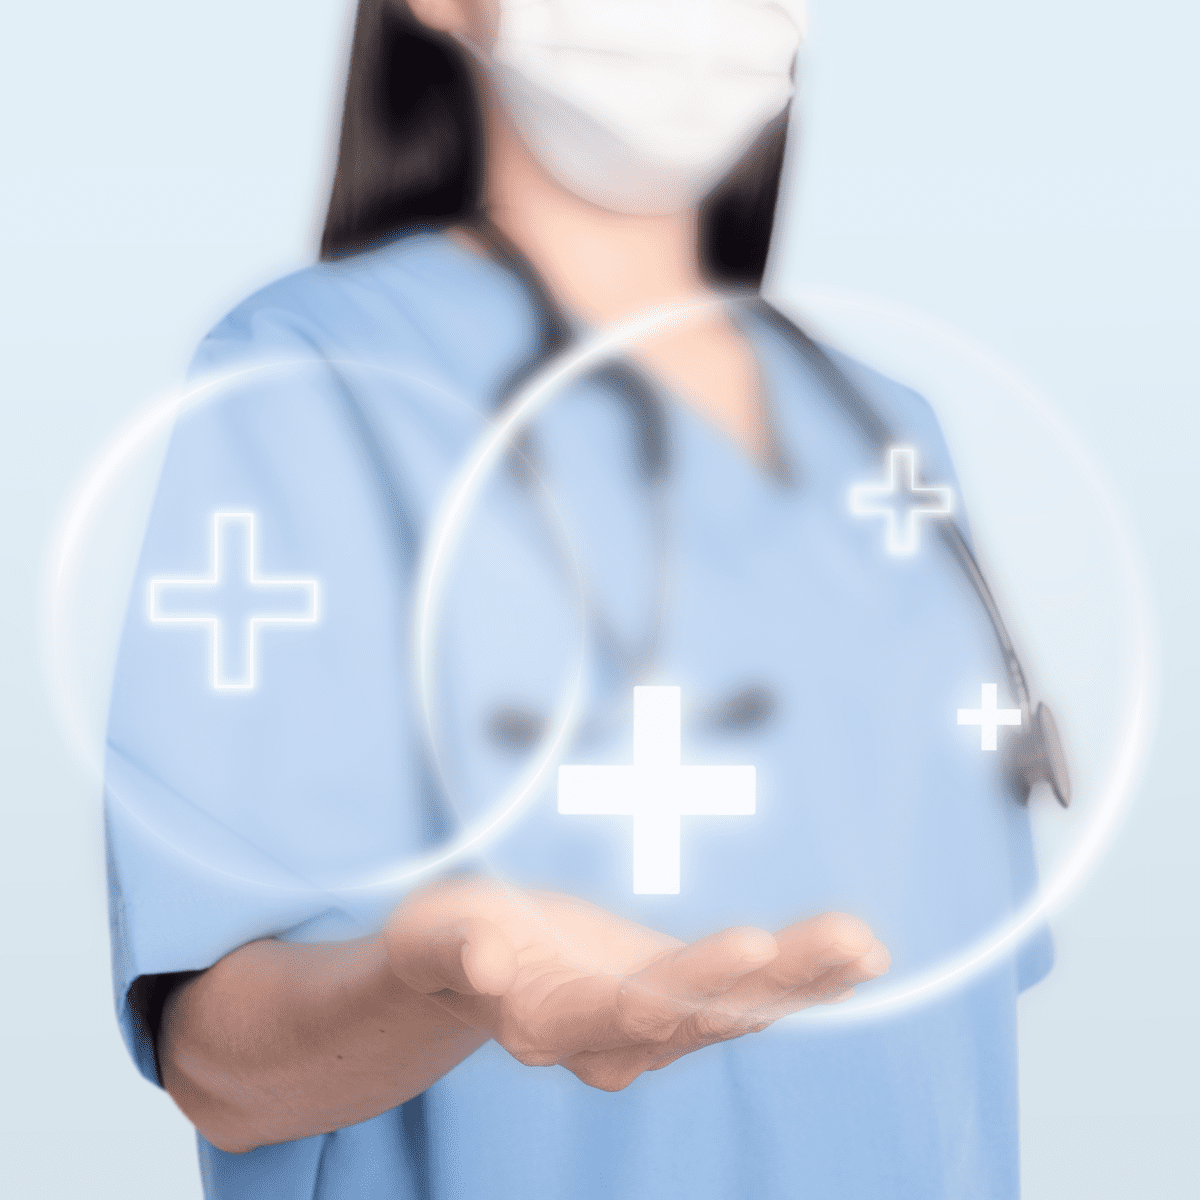 Imagen de doctora con iconos de salud en su mano Anesthesia-madrid-doctura-con-simbolos-de-suma-beneficios